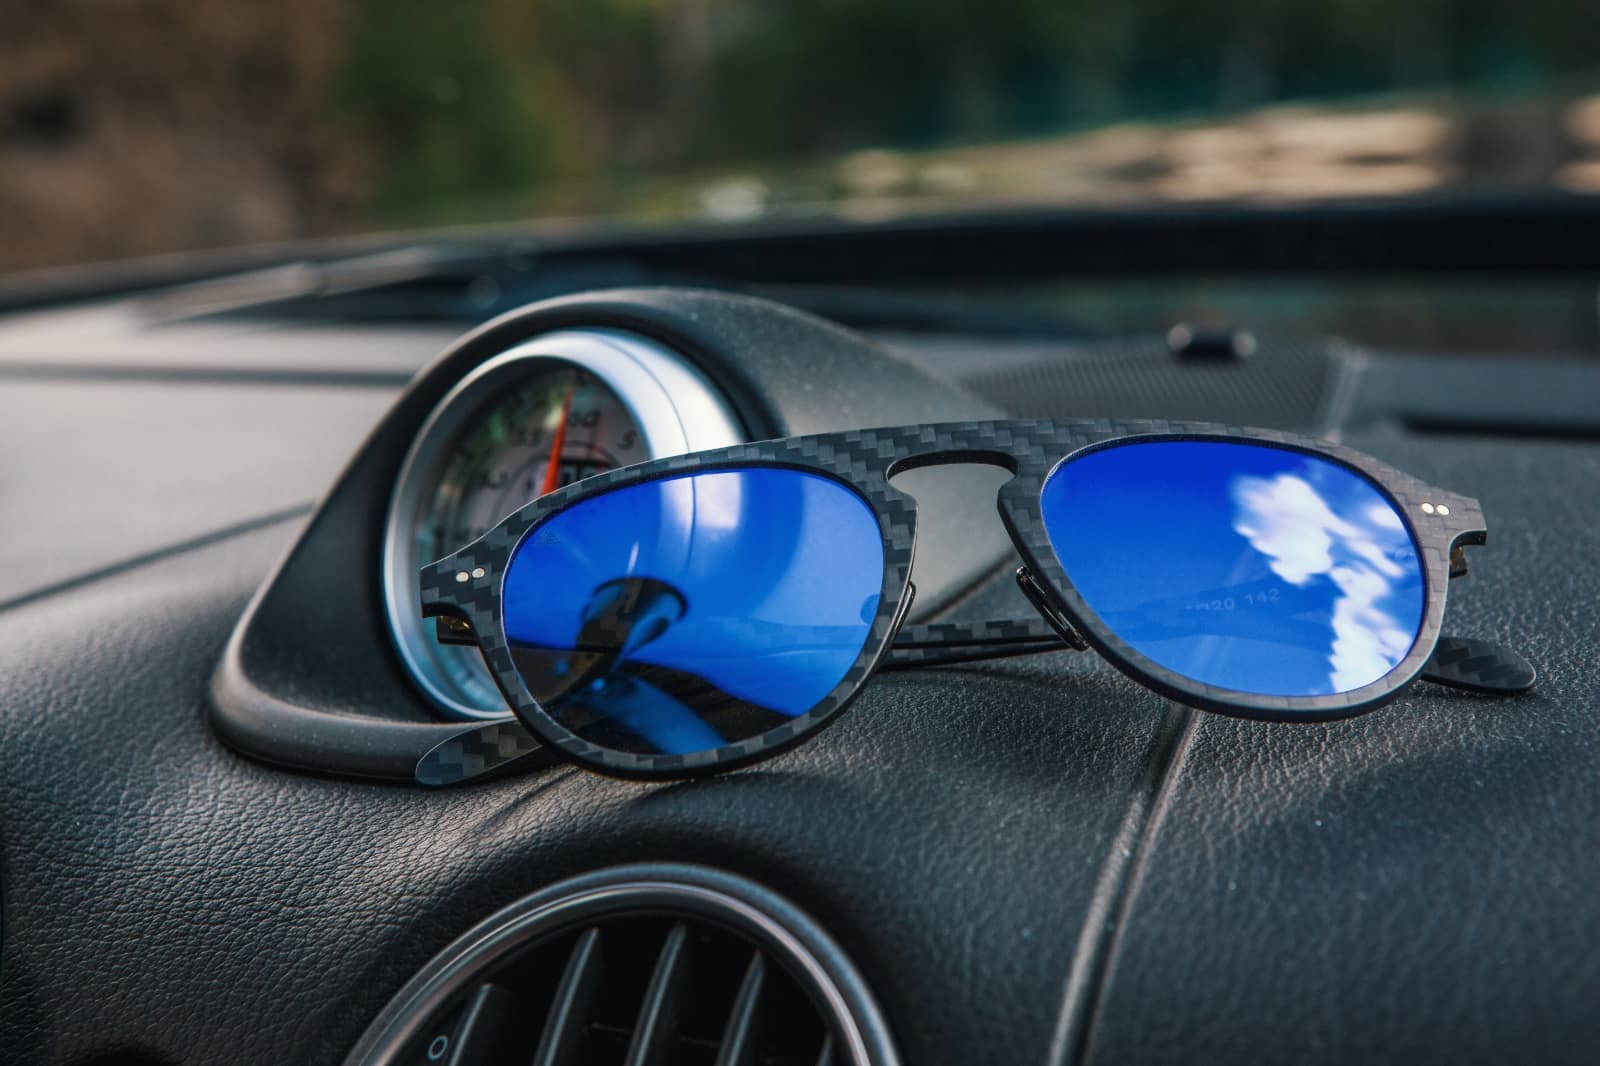 Estas son las gafas de sol, filtro y color de la lente, que la DGT  recomienda para conducir